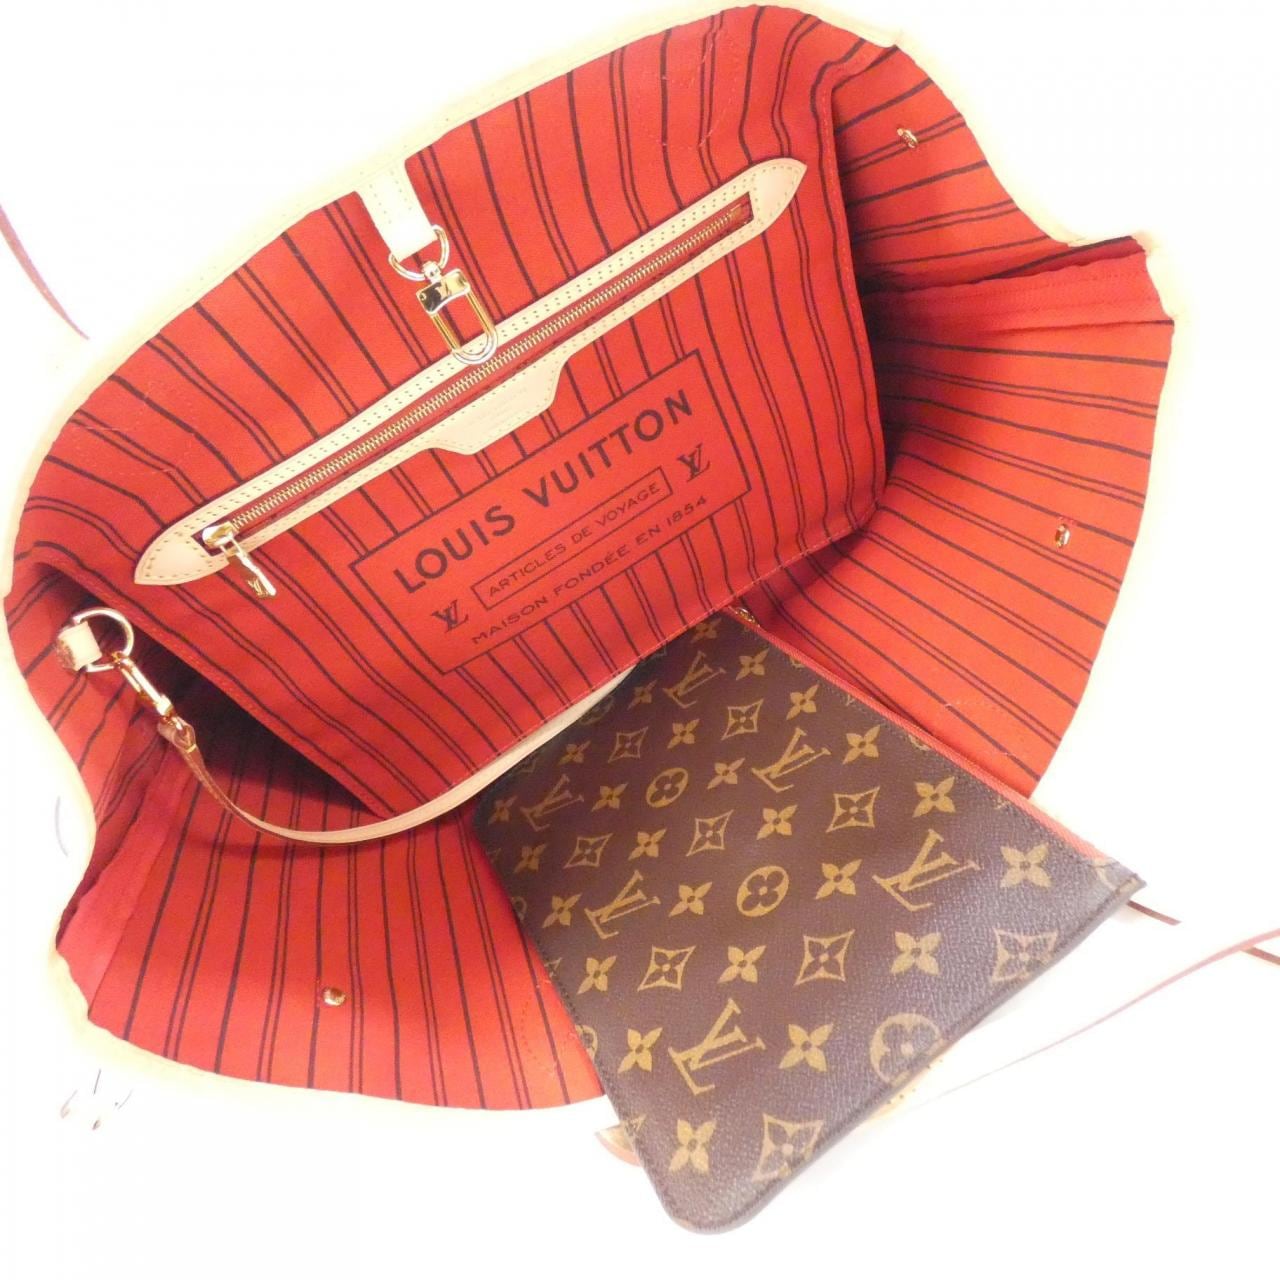 Louis Vuitton M41177 Neverfull Mm Shoulder Bag Monogram Canvas